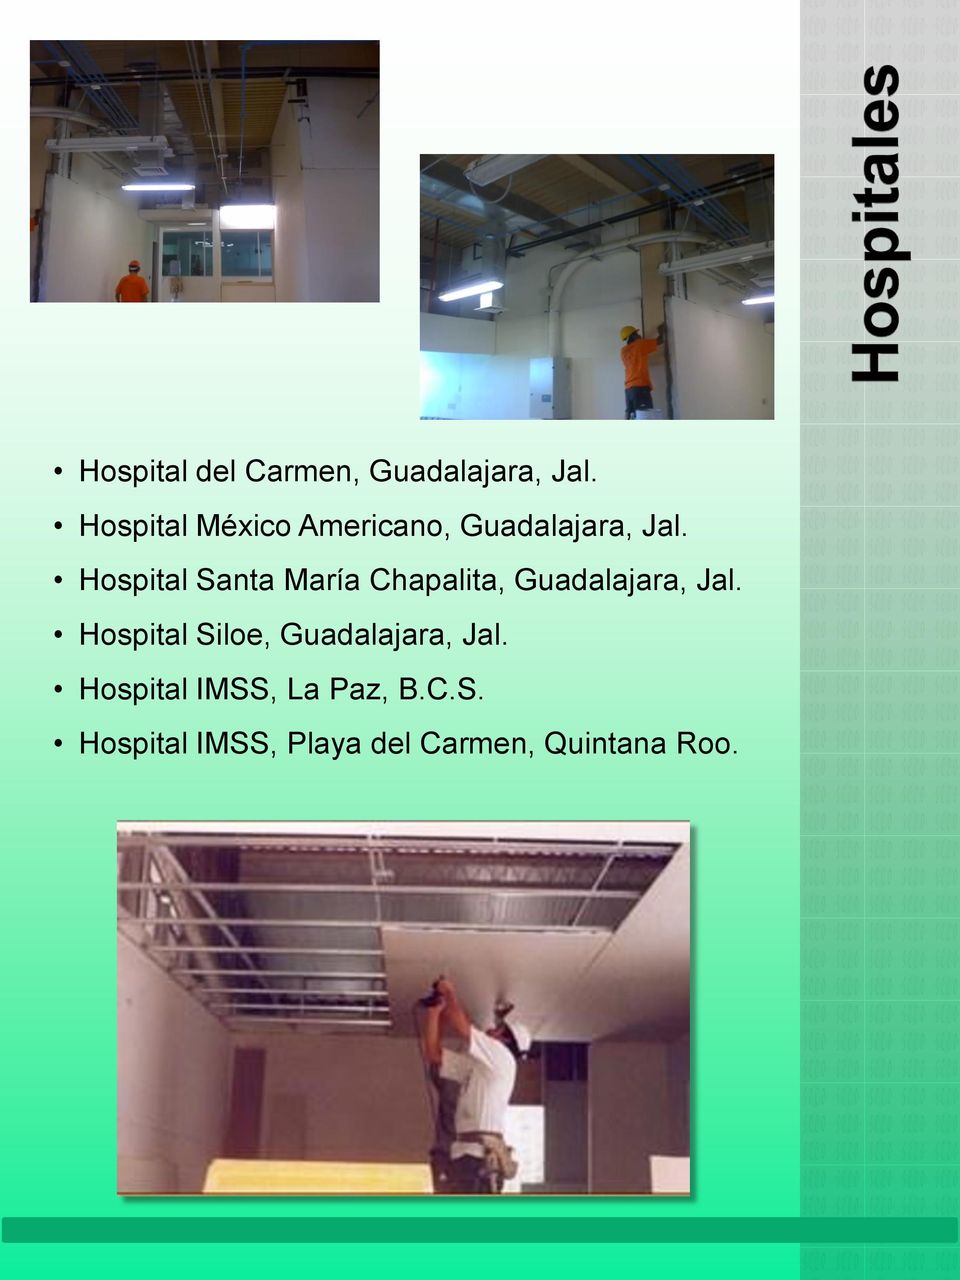 Hospital Santa María Chapalita, Guadalajara, Jal.